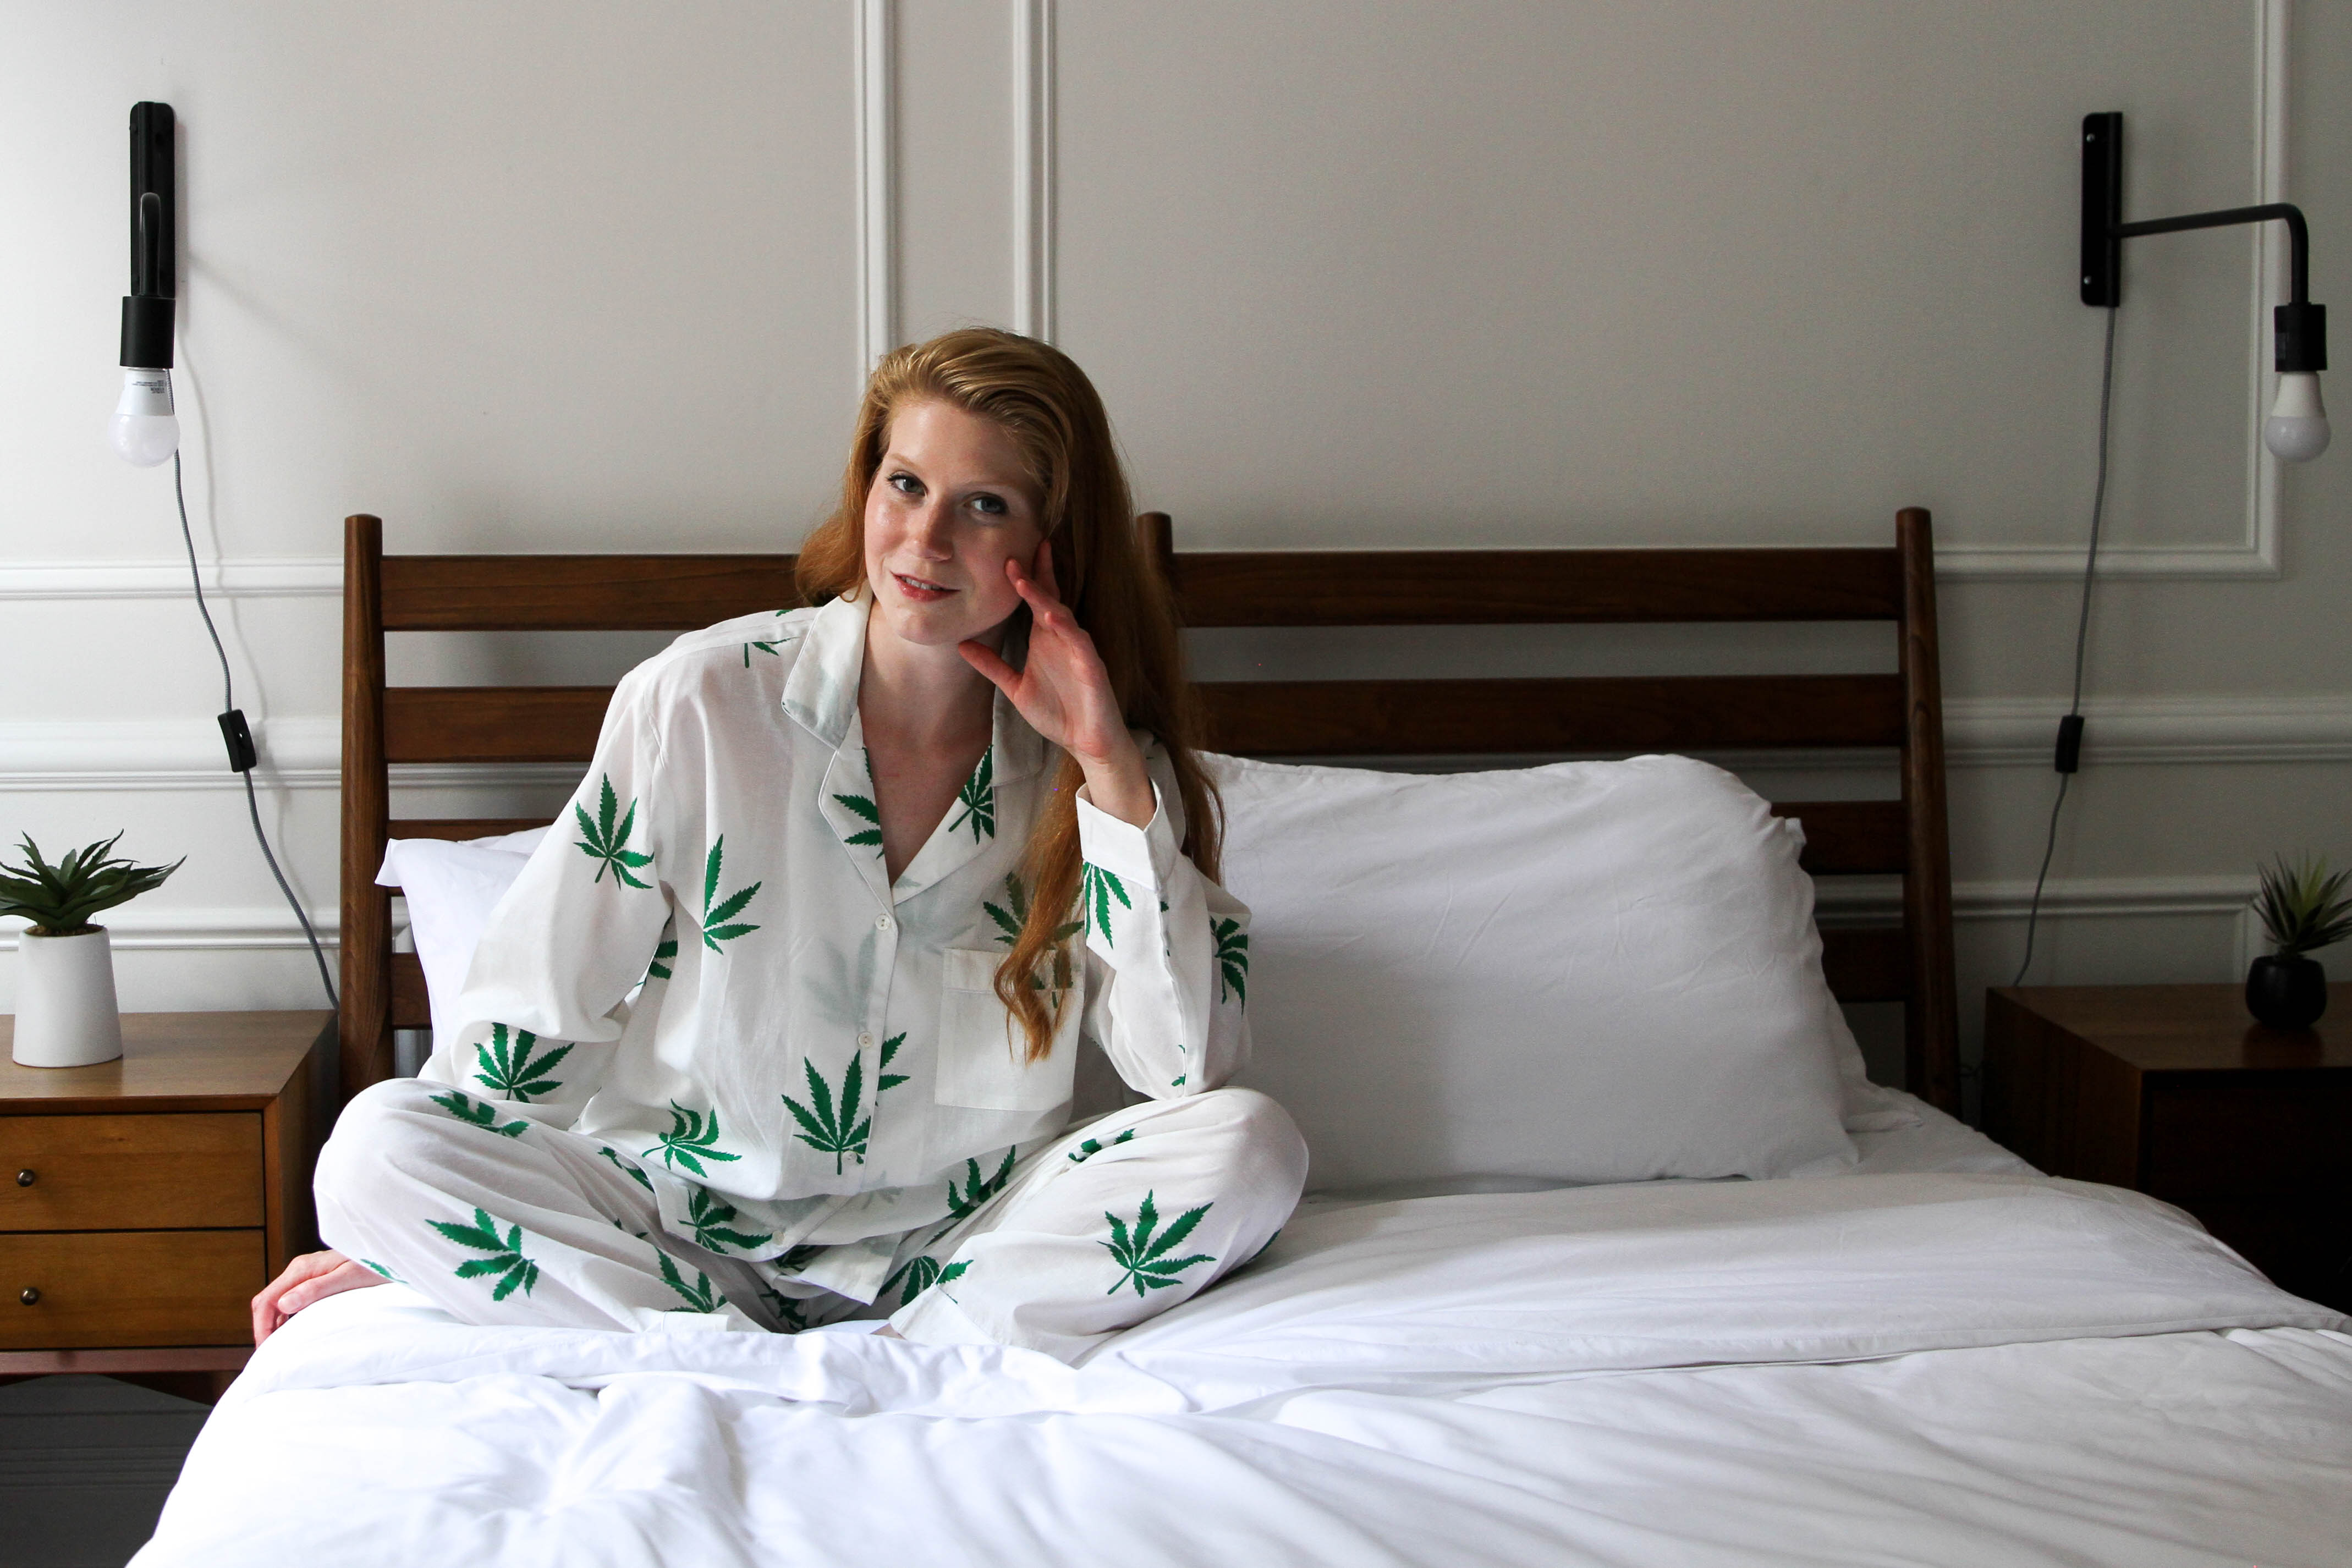 Unwind in Weed-Print Pajamas